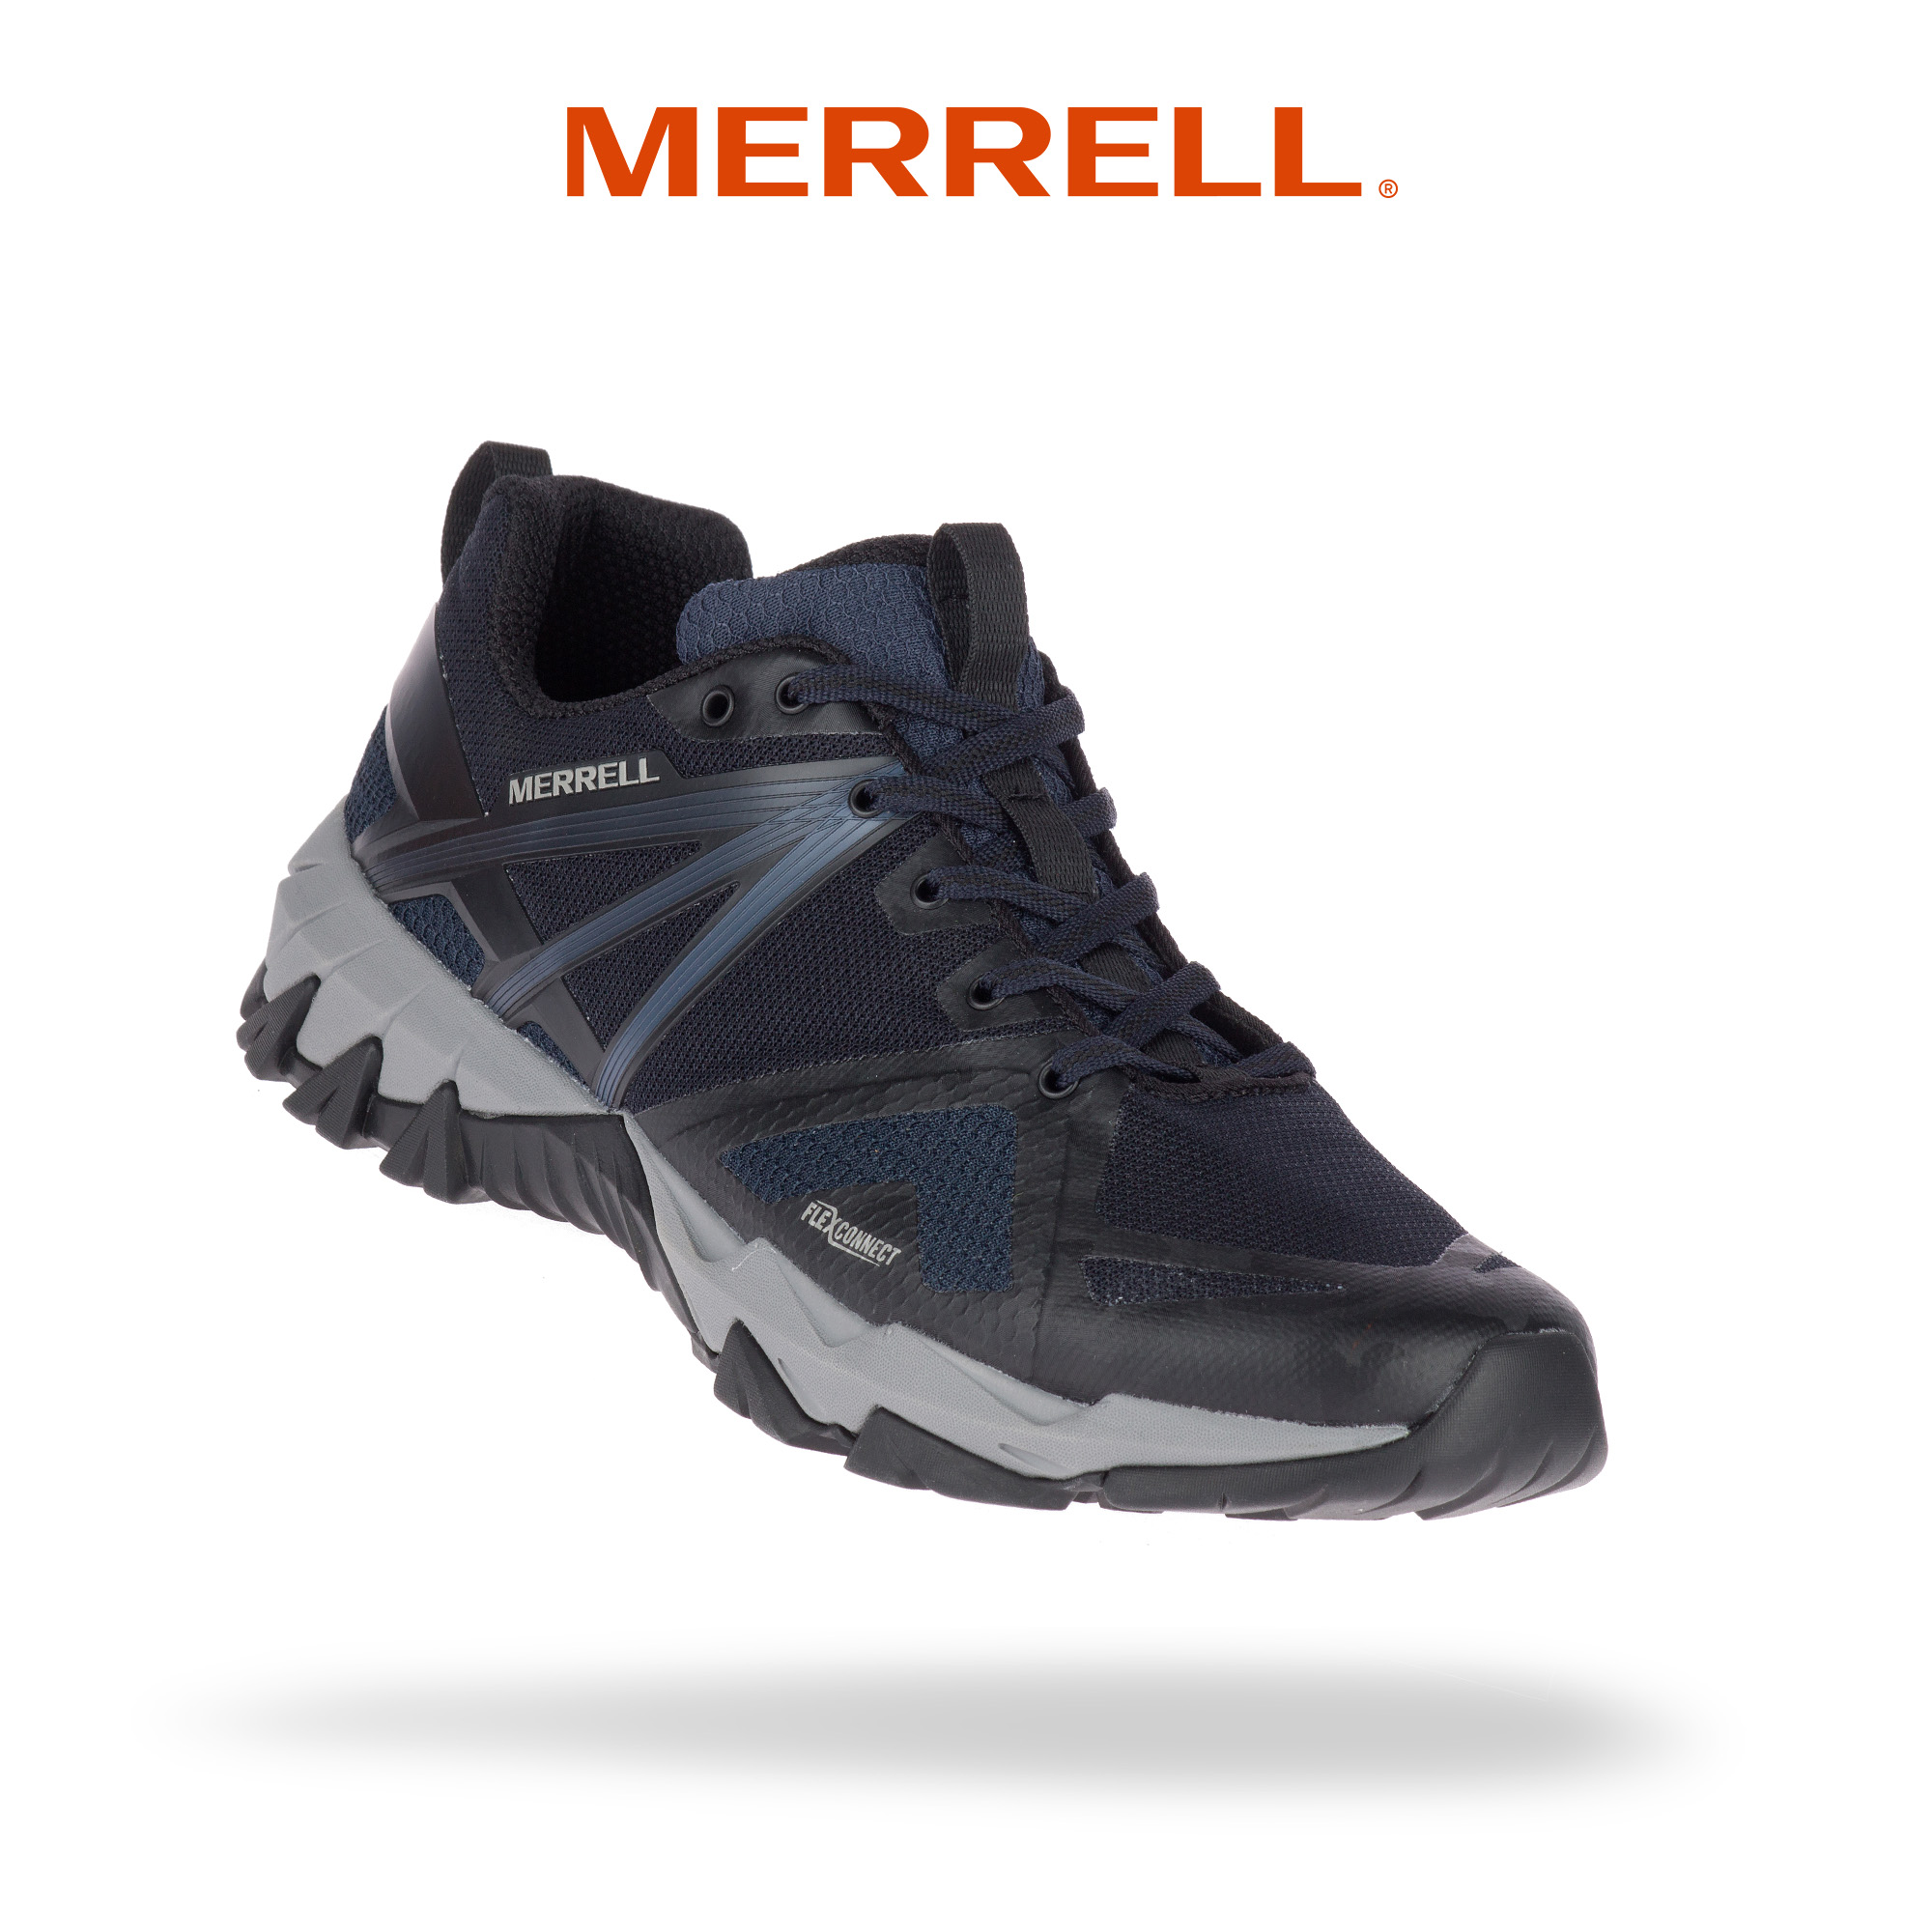 merrell sandals mens philippines price